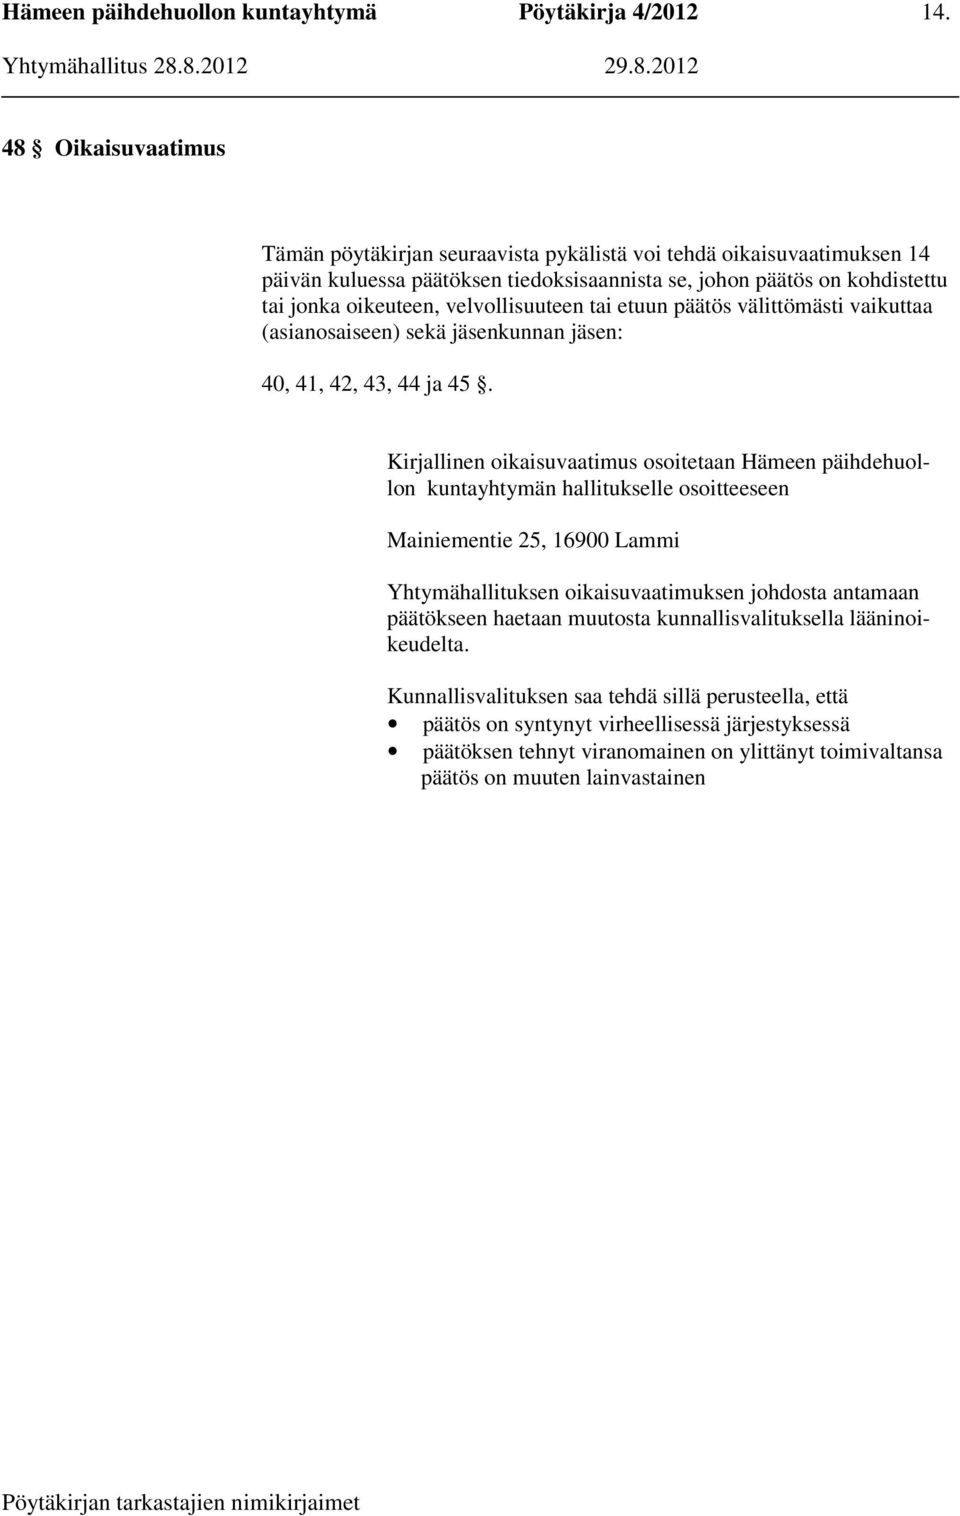 Kirjallinen oikaisuvaatimus osoitetaan Hämeen päihdehuollon kuntayhtymän hallitukselle osoitteeseen Mainiementie 25, 16900 Lammi Yhtymähallituksen oikaisuvaatimuksen johdosta antamaan